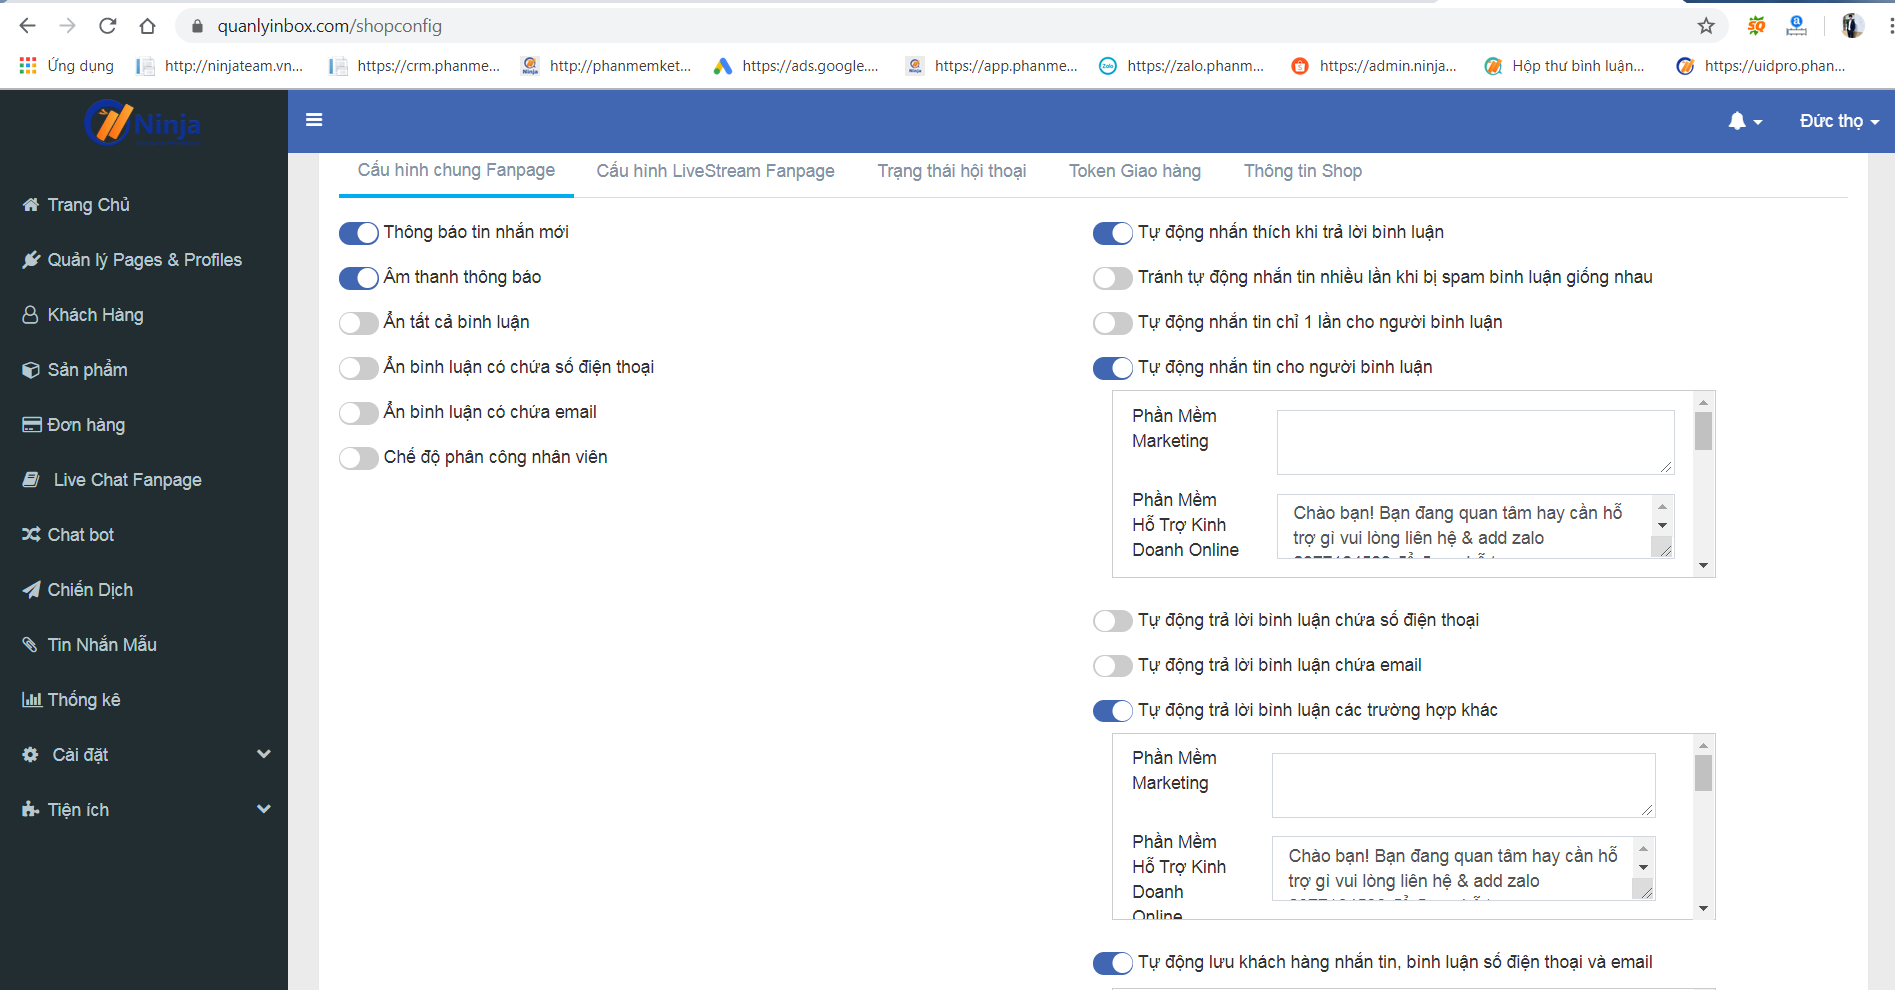 ninja fp 7 Ninja Fanpage – phần mềm quản lý inbox comment, chatbot thông minh hiệu quả